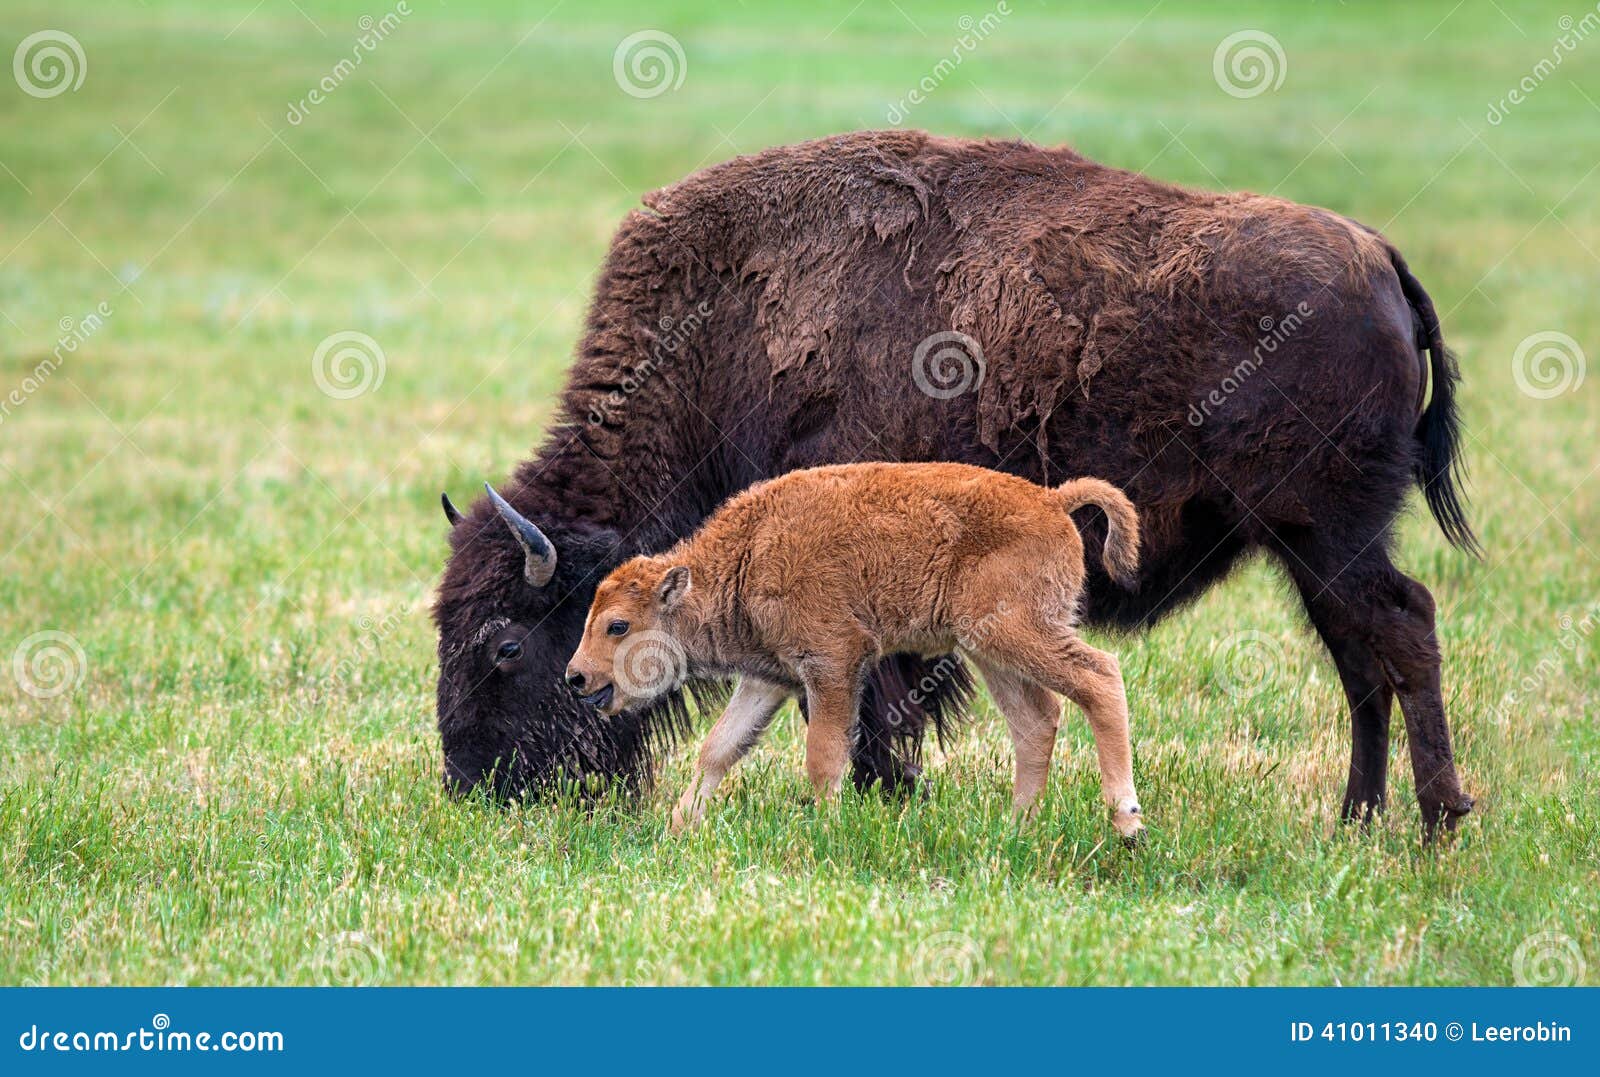 cow buffalo clipart - photo #41